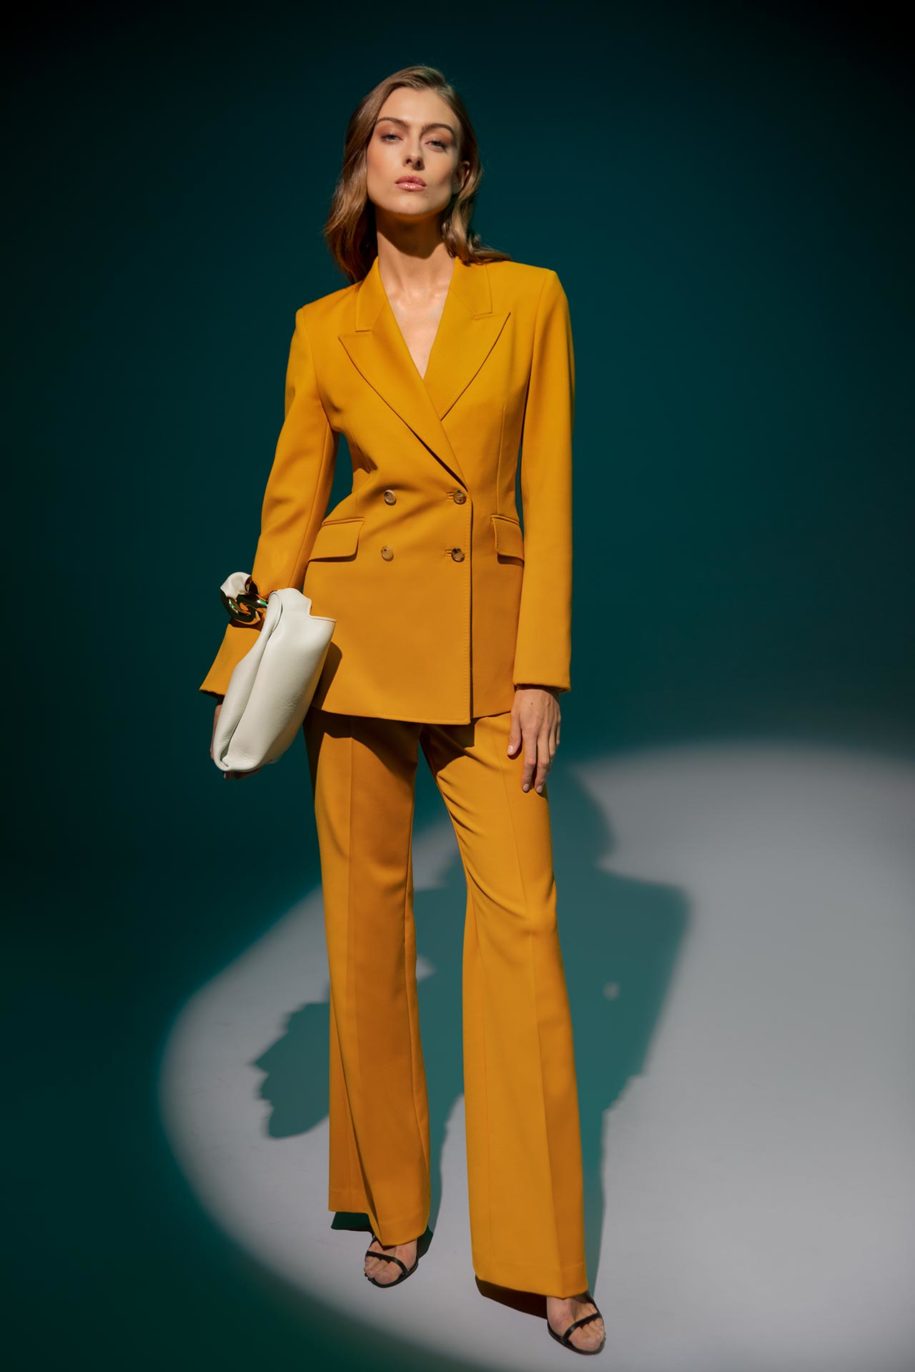 Neiman Marcus Mustard Power Suit - Standing Model